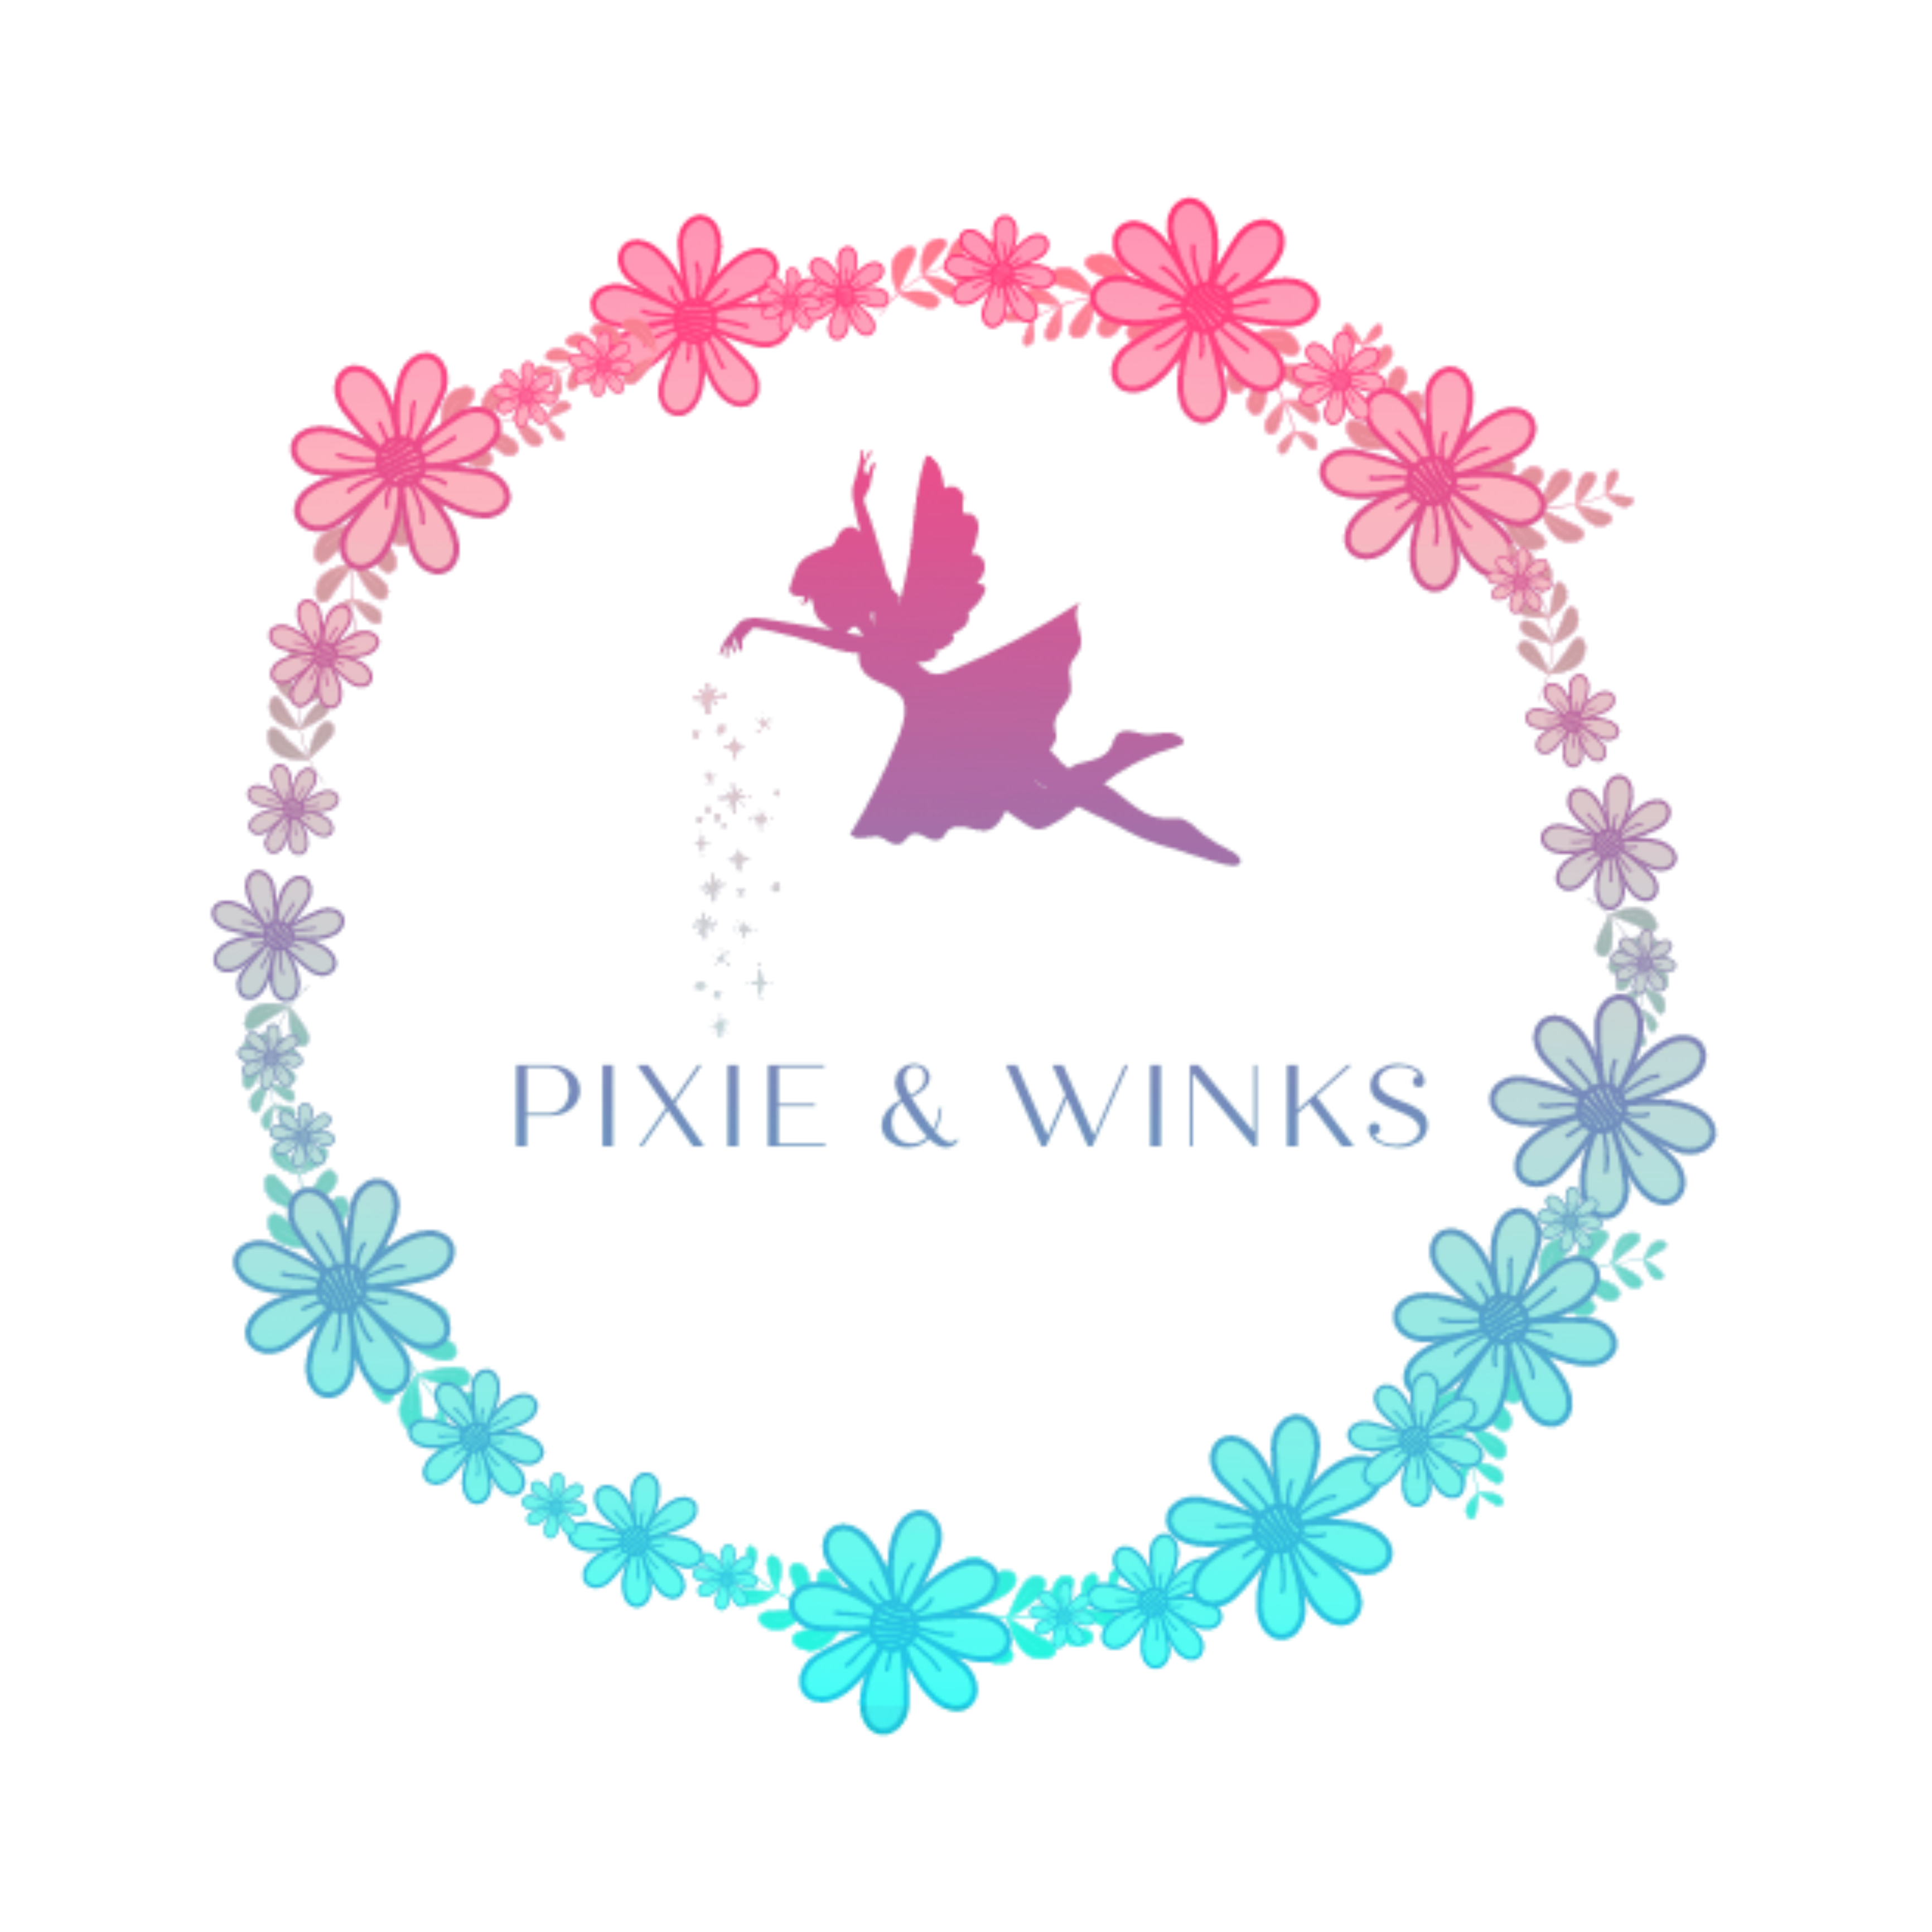 Pixie & Winks